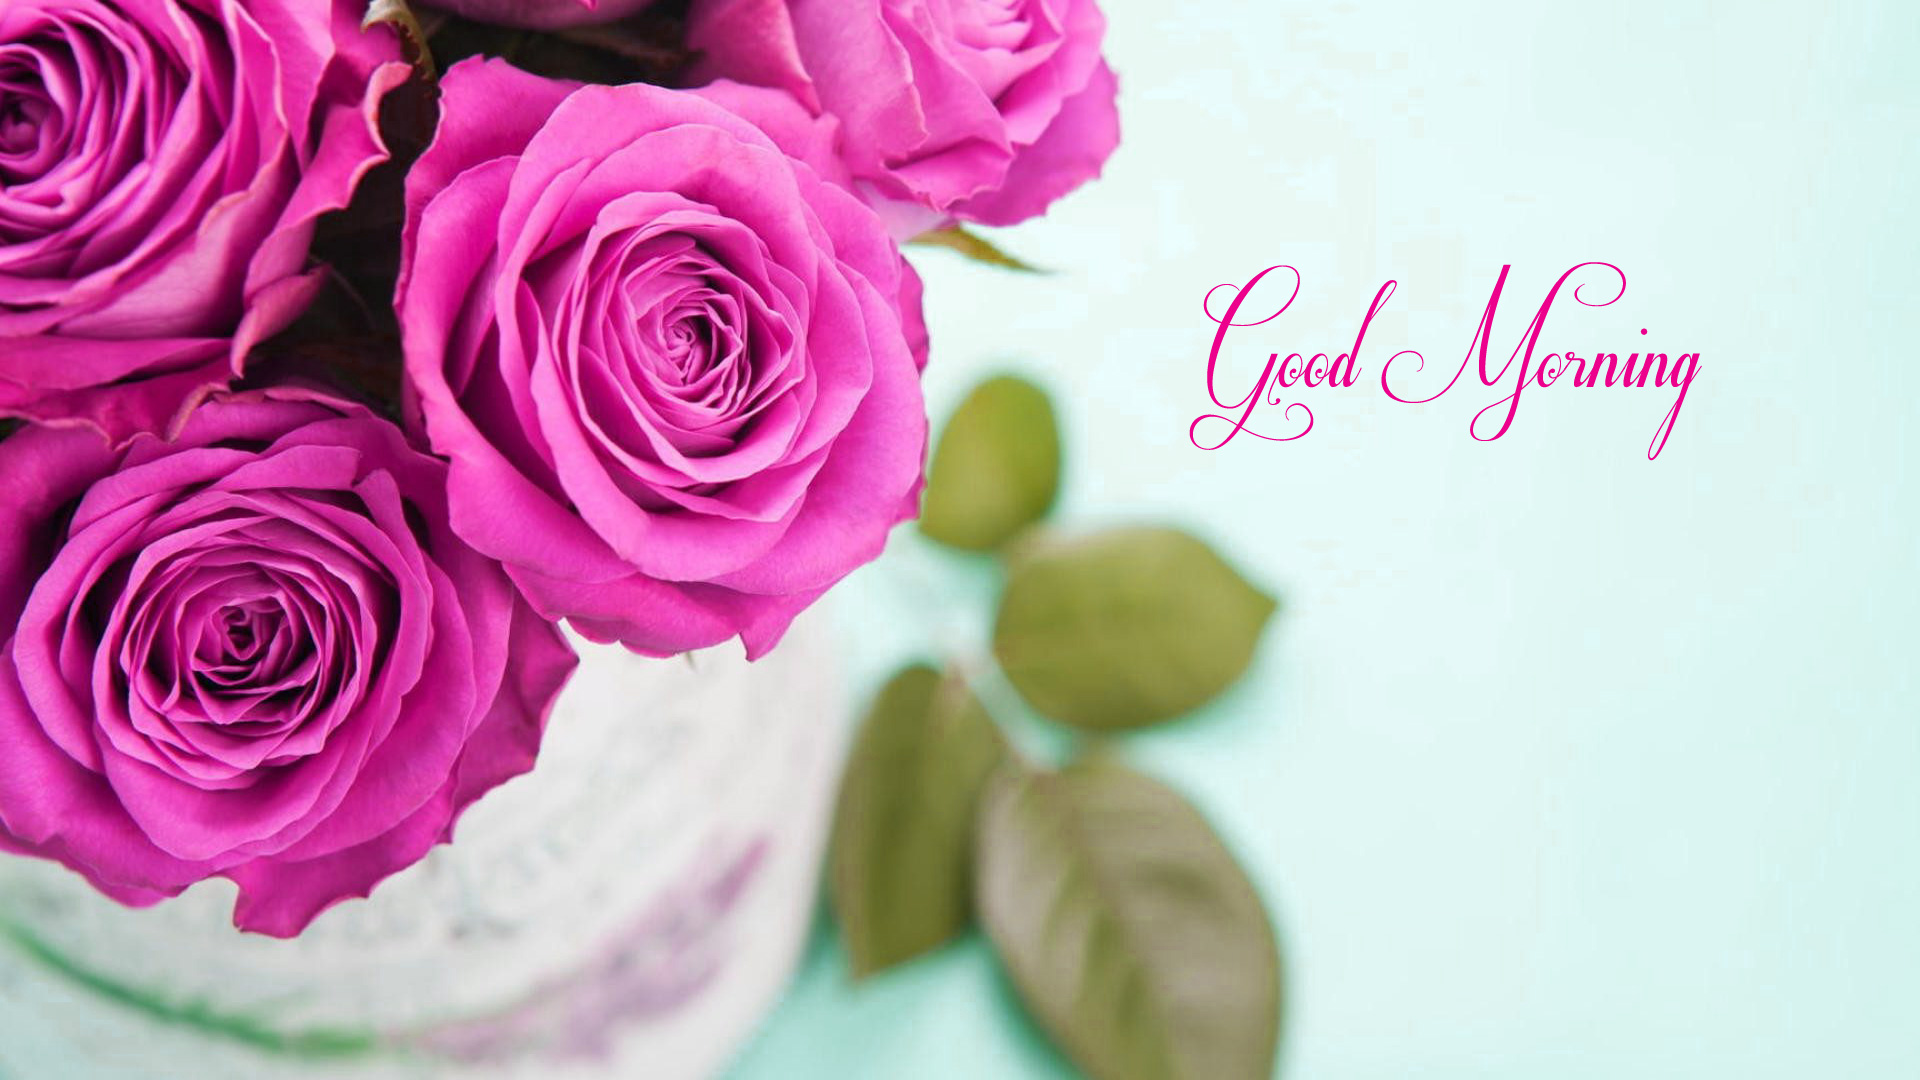 good morning wallpaper for whatsapp,garden roses,pink,rose,flower,petal